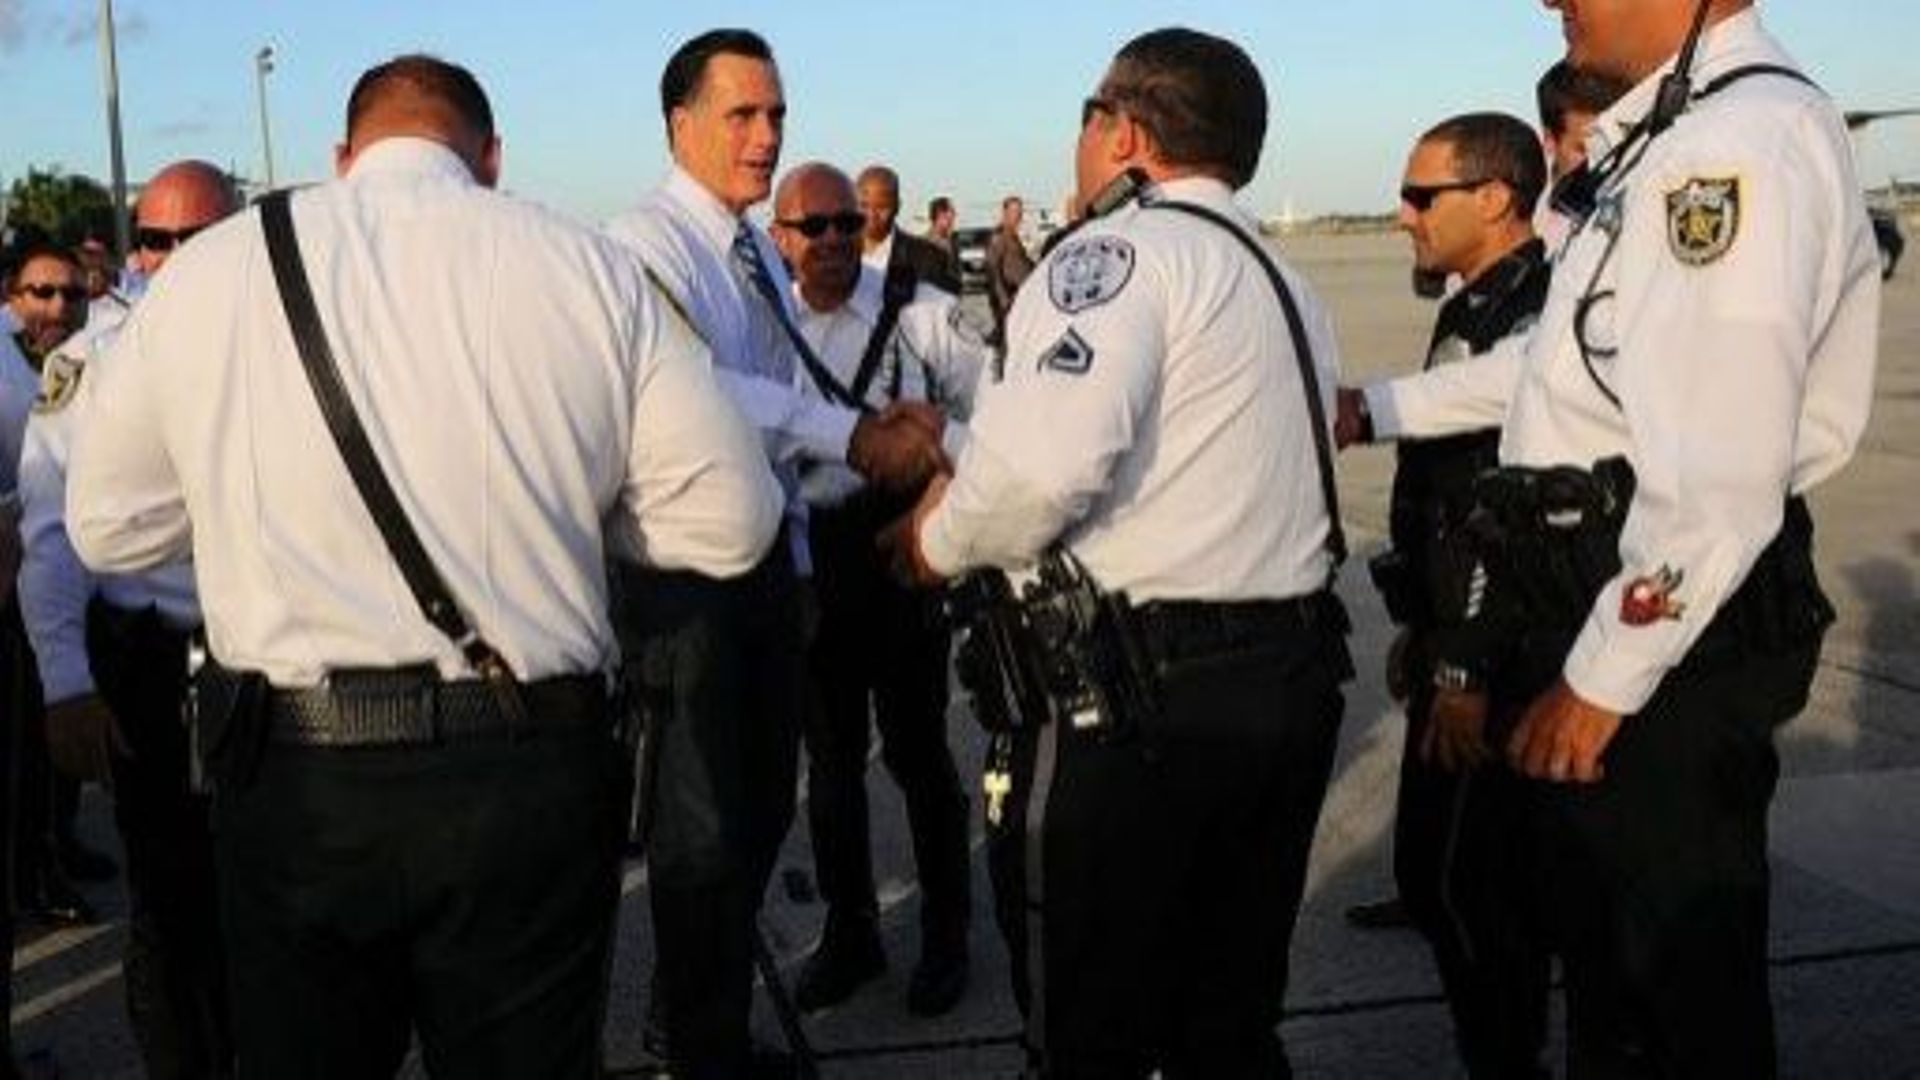 Mitt Romney, candidat à l'élection présidentielle, salue des policiers avant d'embarquer dans un avion, le 23 octobre 2012 à West palm Beach, en Floride